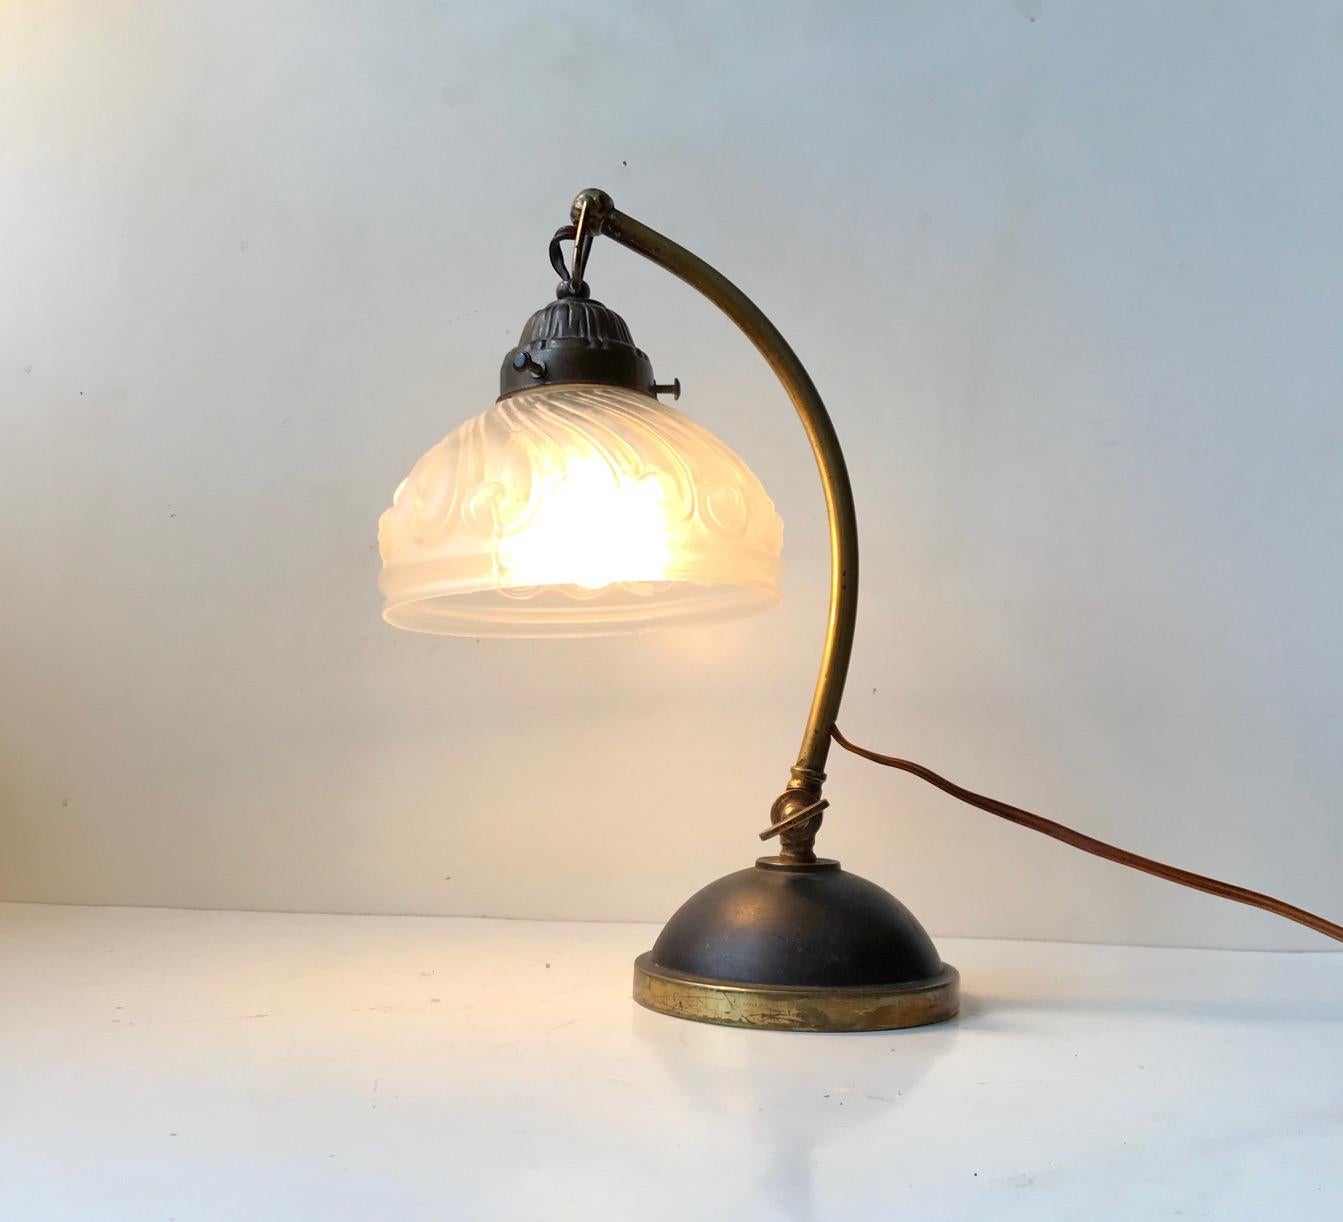 Une lampe de table élégante fabriquée en Italie vers 1930-40. Il est doté d'un abat-jour en verre moulé avec des vagues, d'une base en laiton massif partiellement patiné et d'un mécanisme permettant de régler l'angle de la tige. Mesures : H : 30 cm,